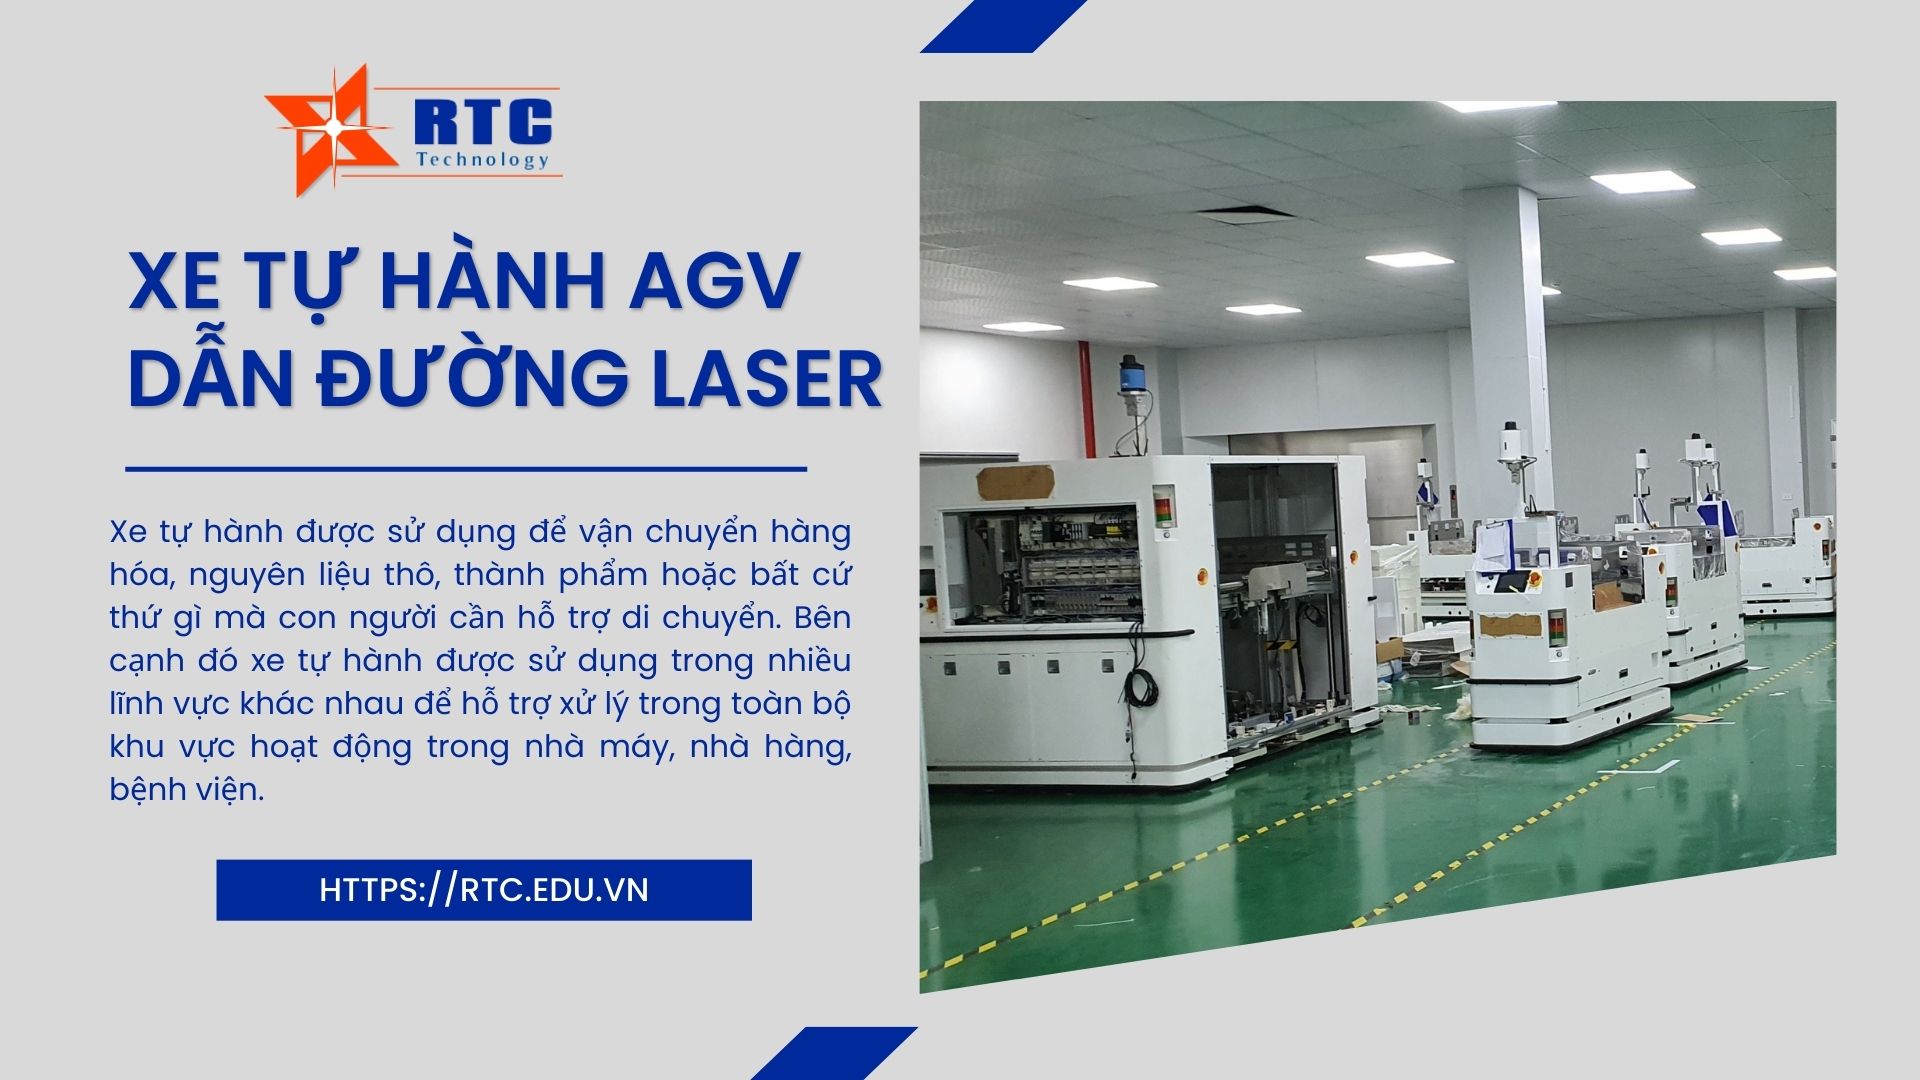 Xe tự hành AGV dẫn đường Laser là gì? Nguyên lý hoạt động và ứng dụng